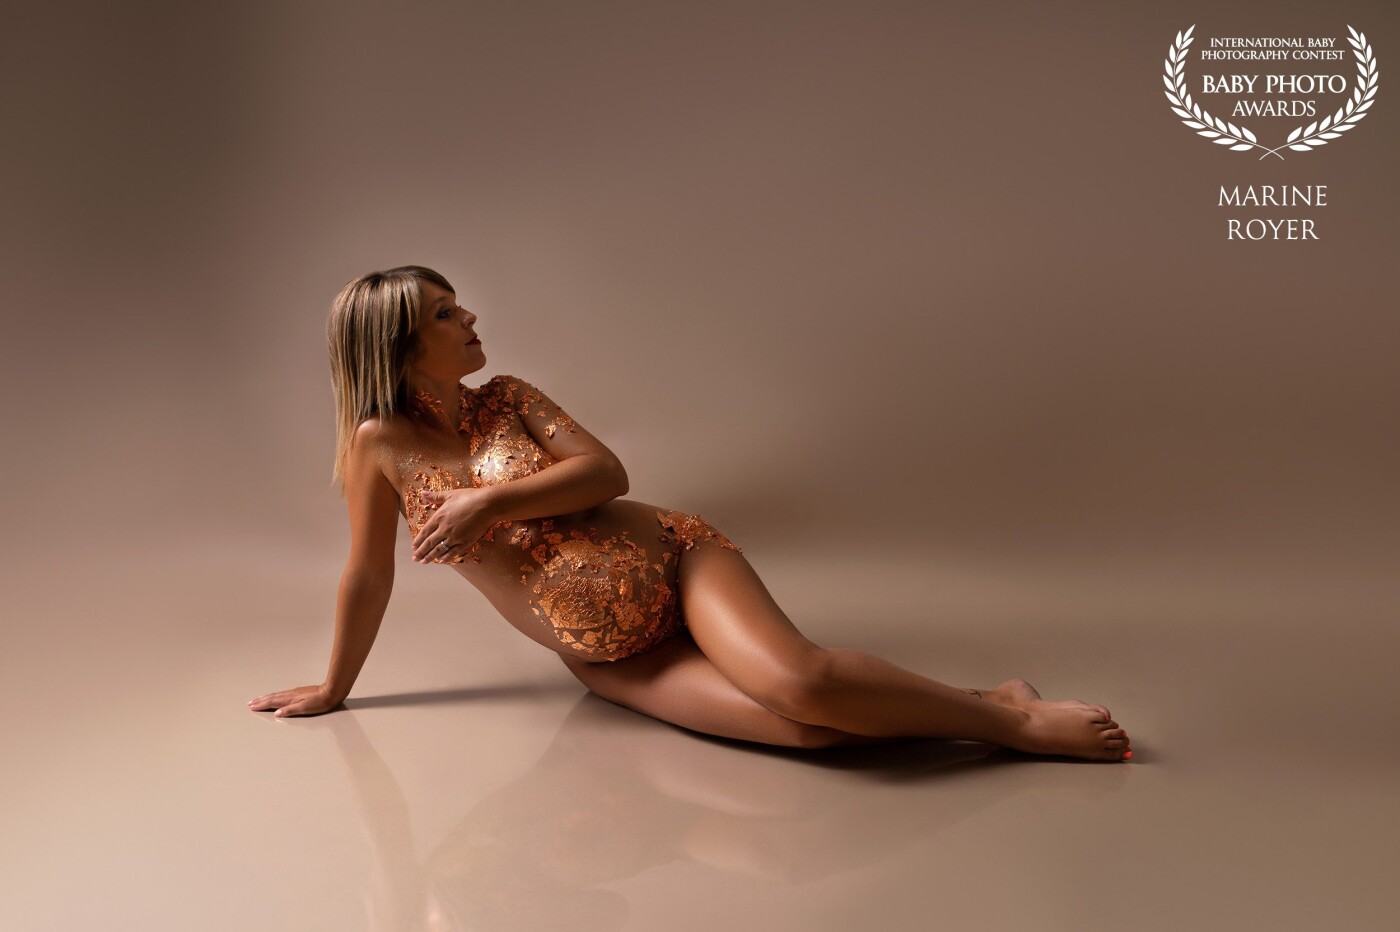 La photographie artistique à pour but de magnifier la femme enceinte et ses courbes ❤️ Cette photo représente un beau travail d'équipe, maquilleuse, modèle et photographe... 